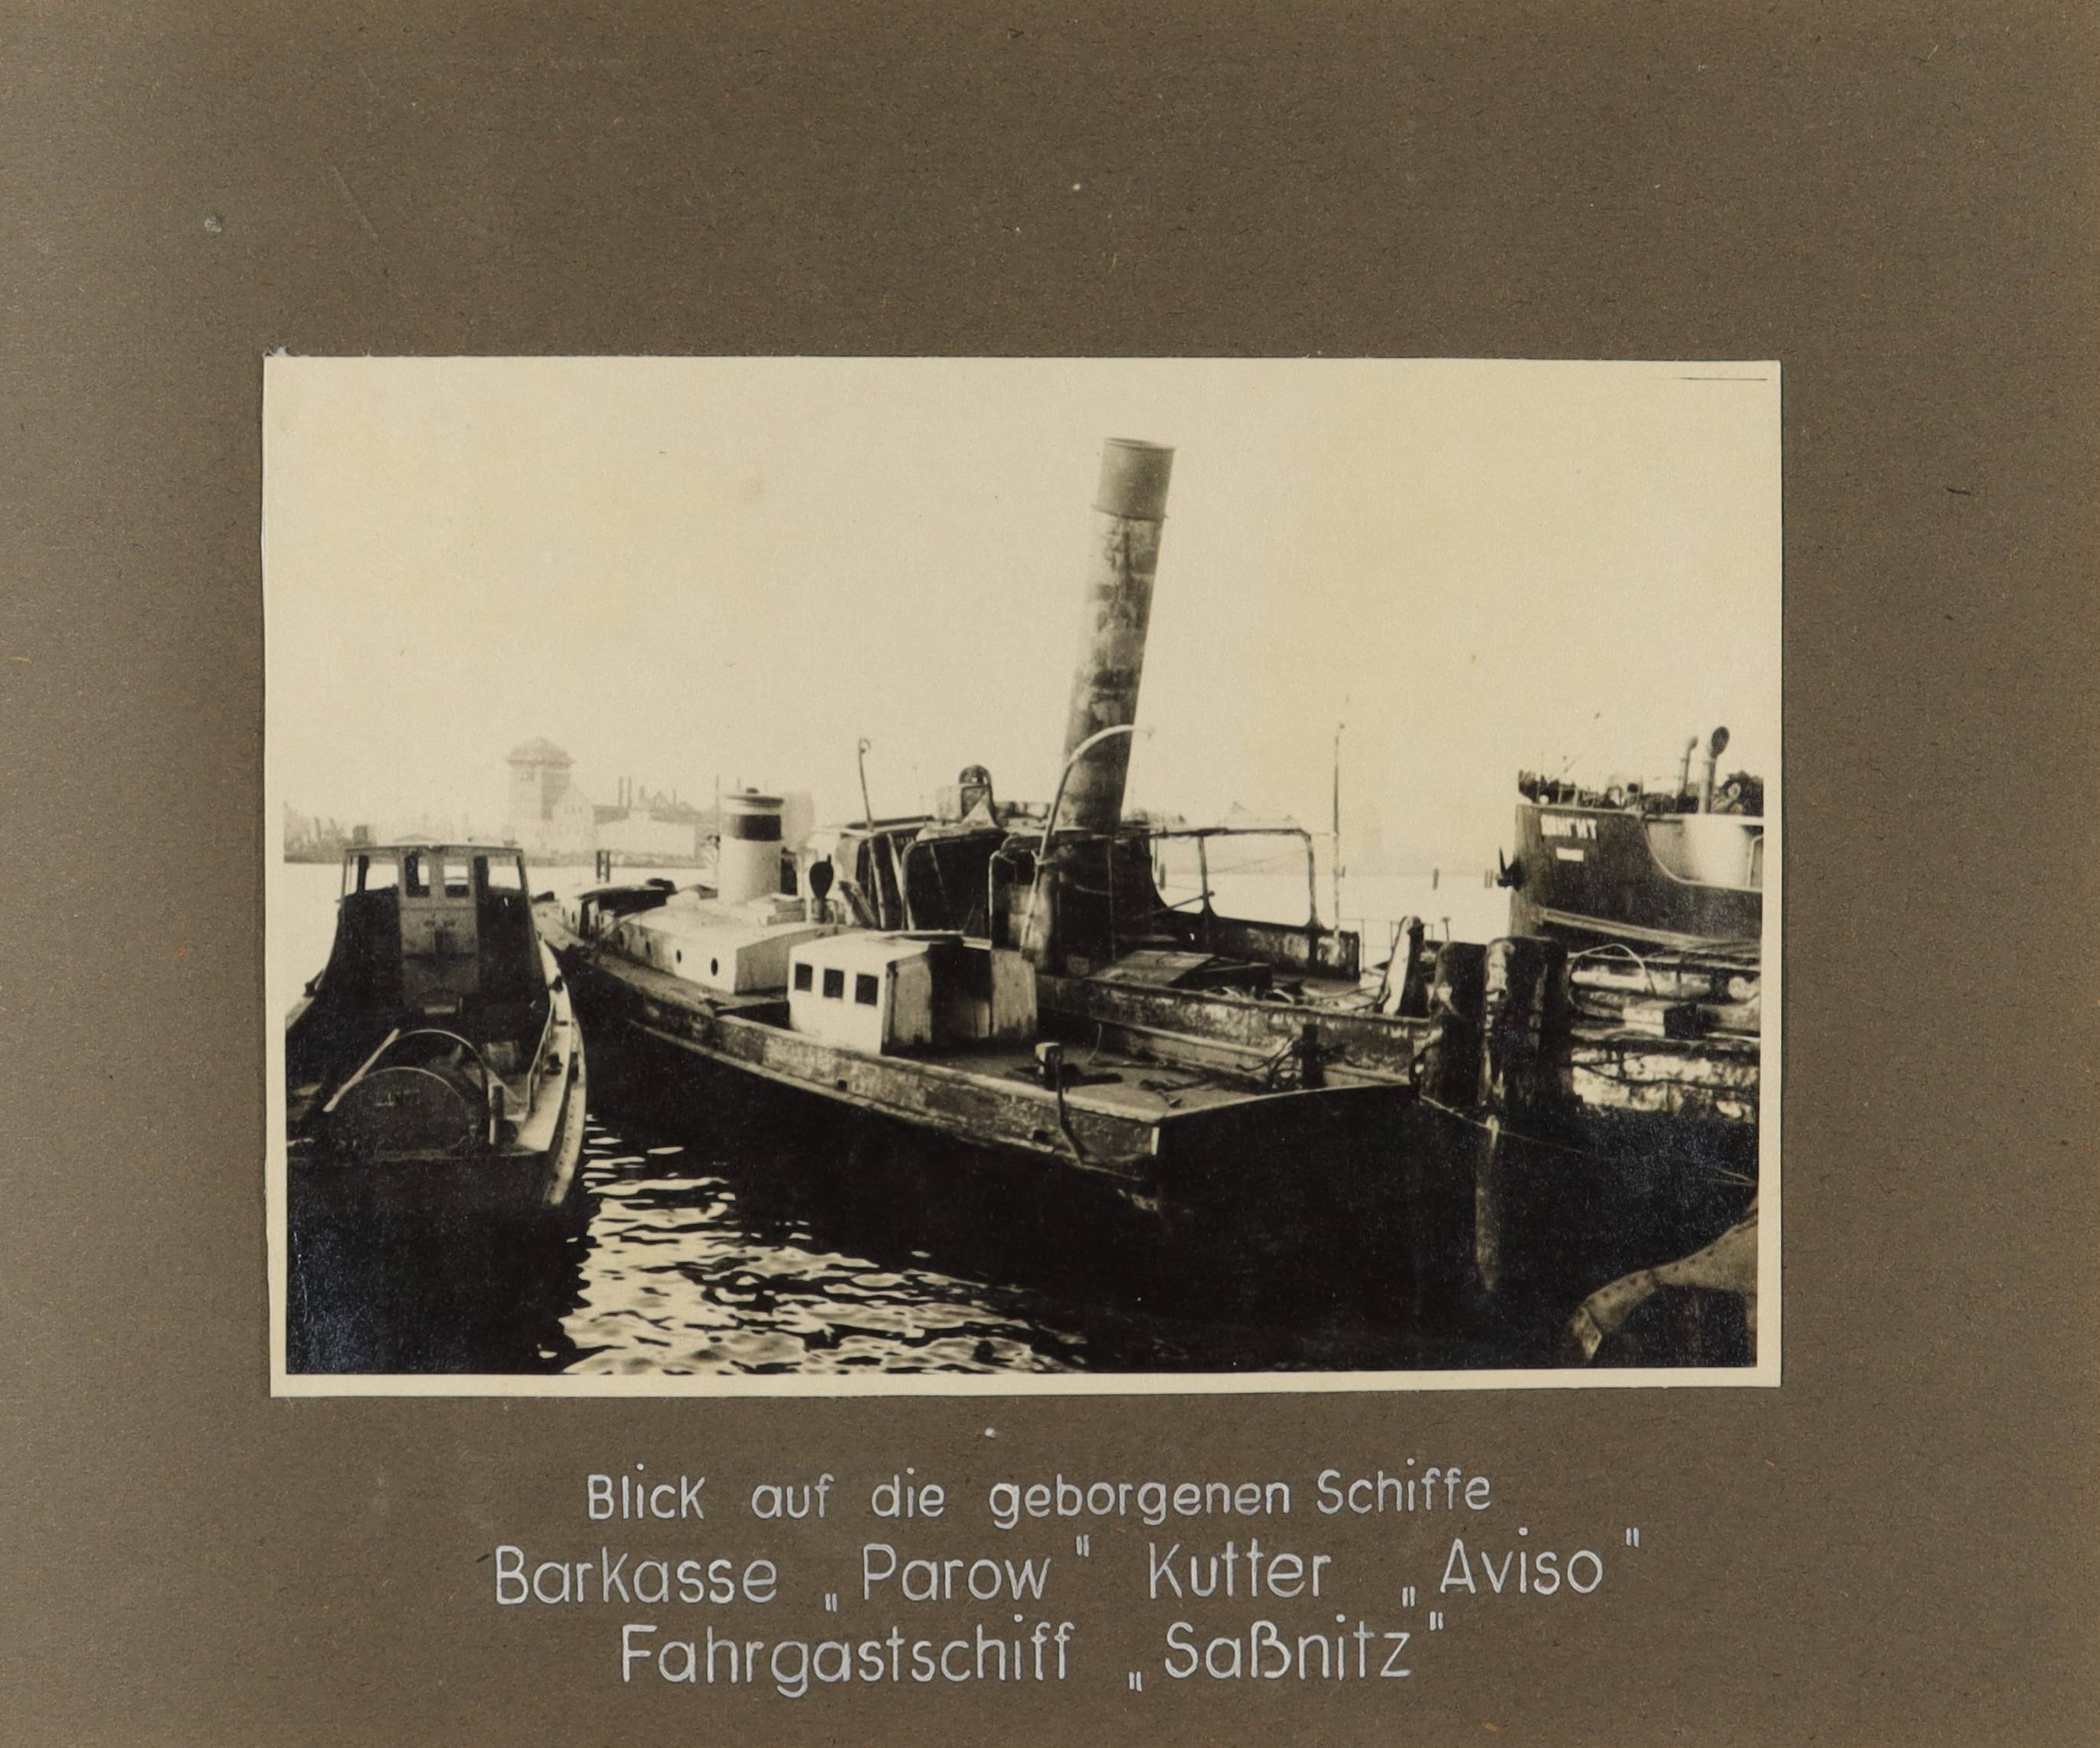 Blick auf die geborgenen Schiffe "Paroew", "Aviso" und "Saßnitz" (Schiffbau- und Schiffahrtsmuseum Rostock RR-F)